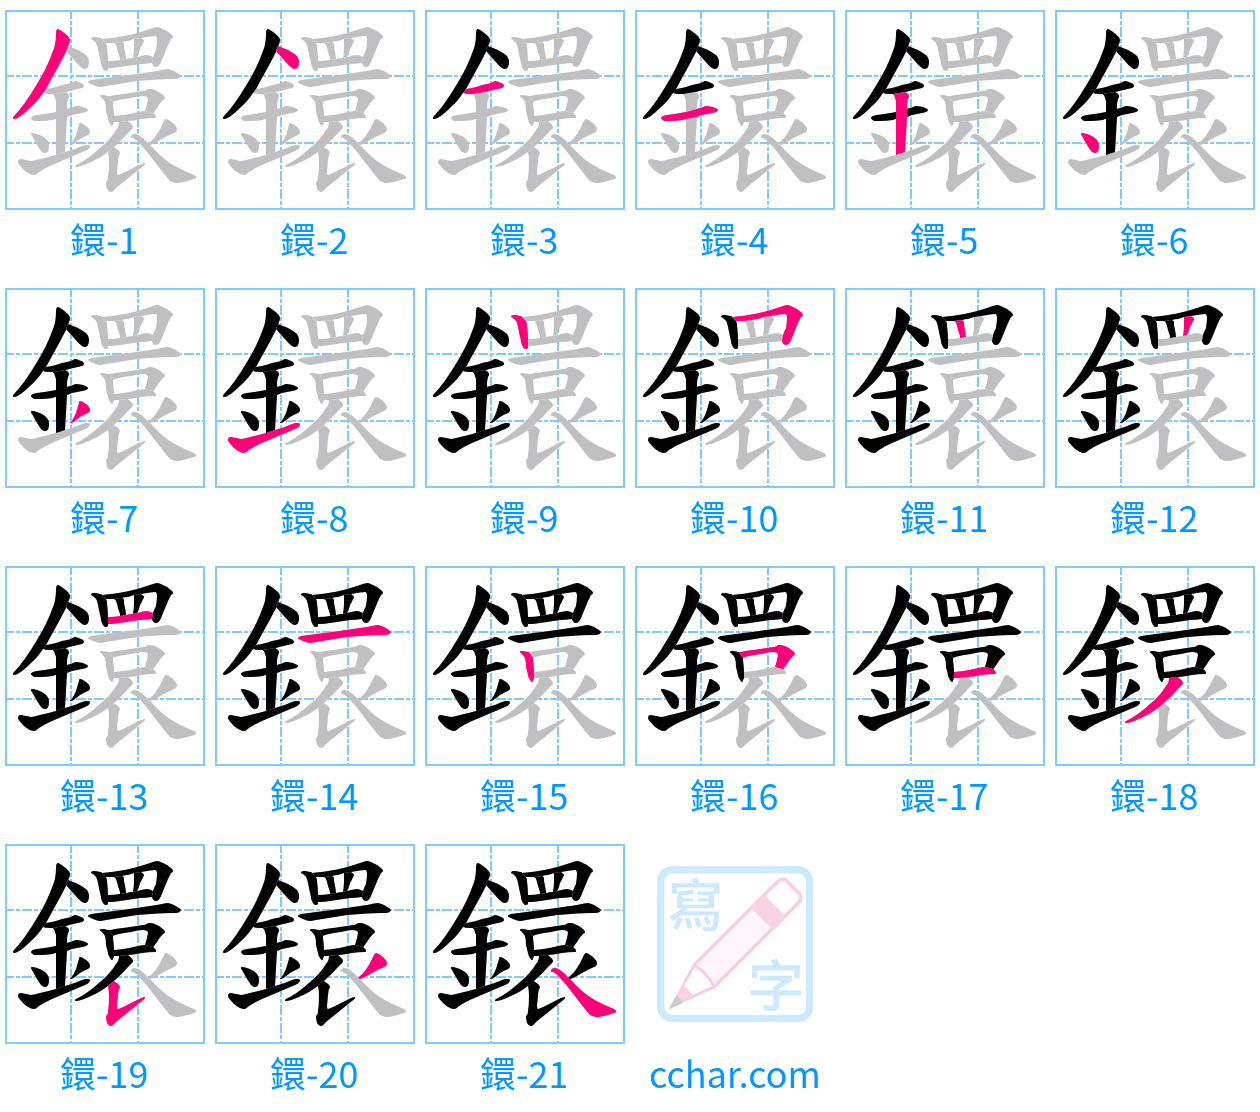 鐶 stroke order step-by-step diagram